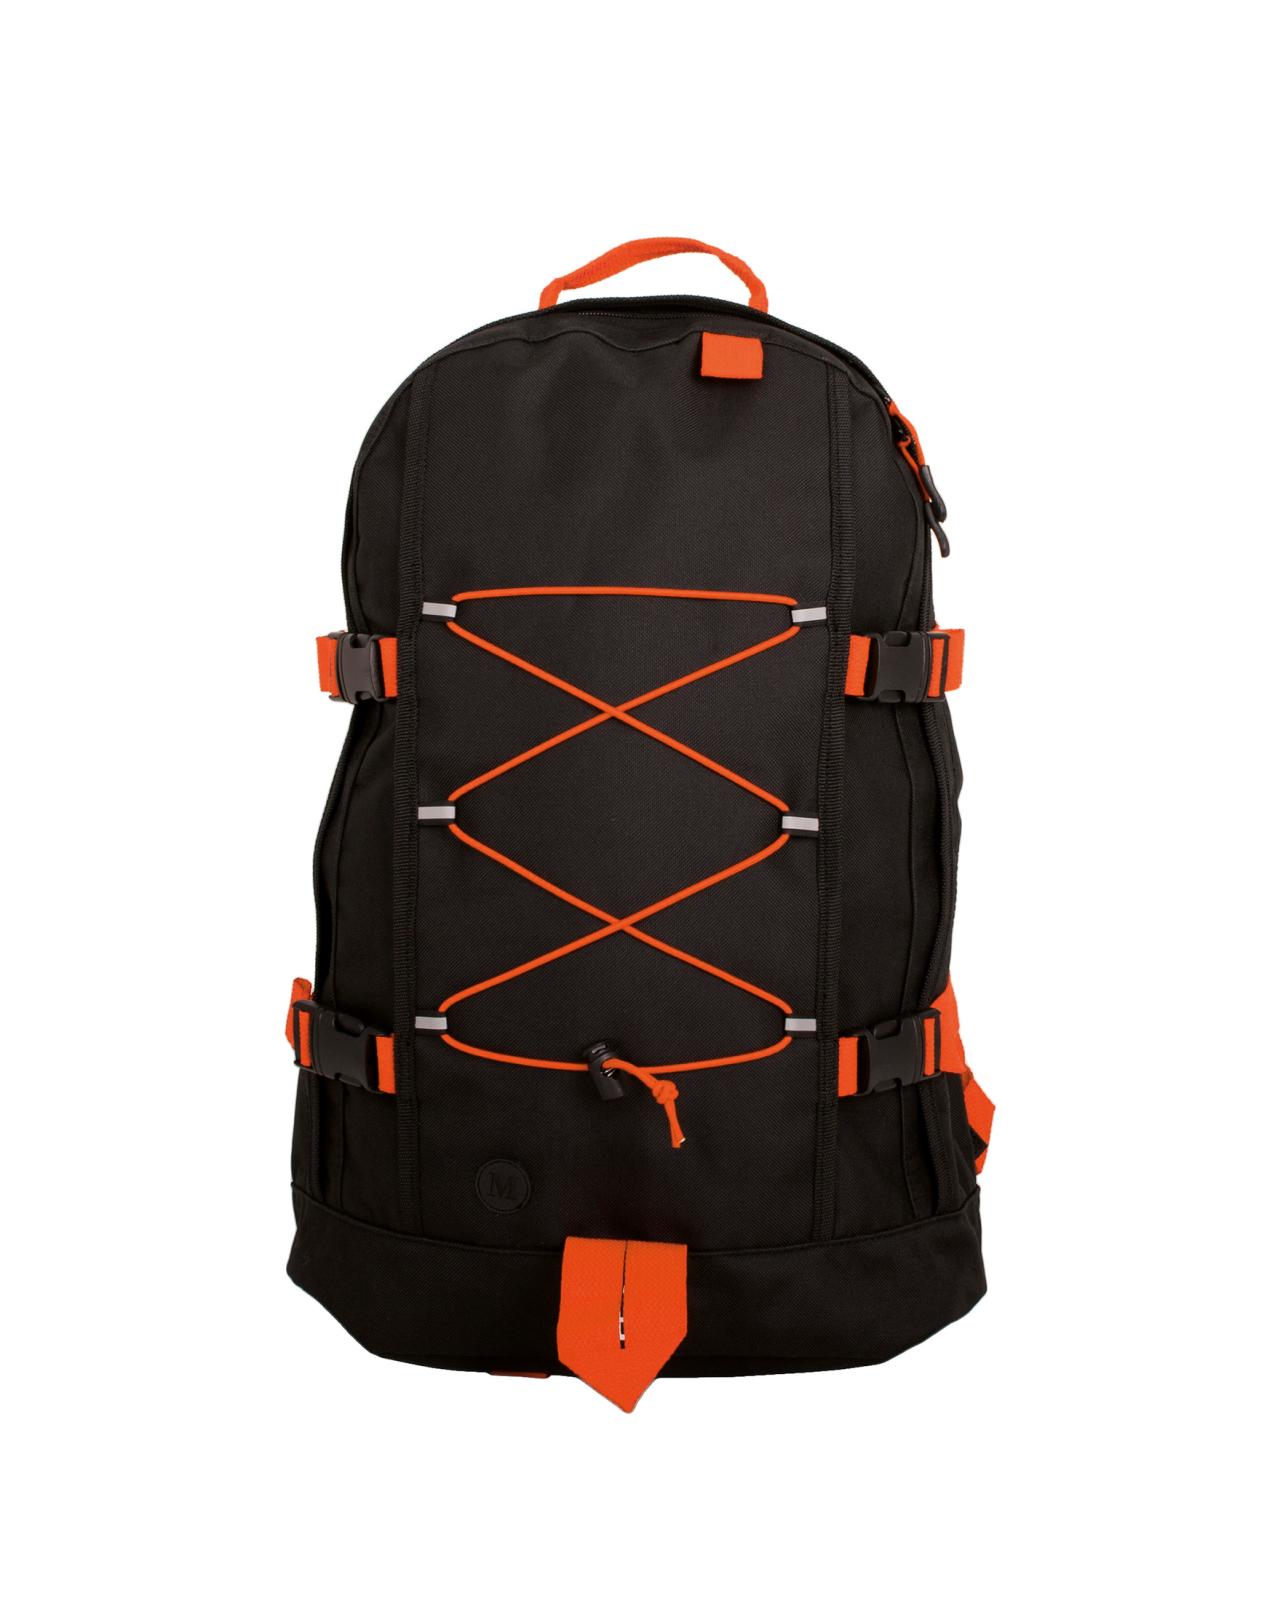 8926 K2 Backpack Sort/Orange